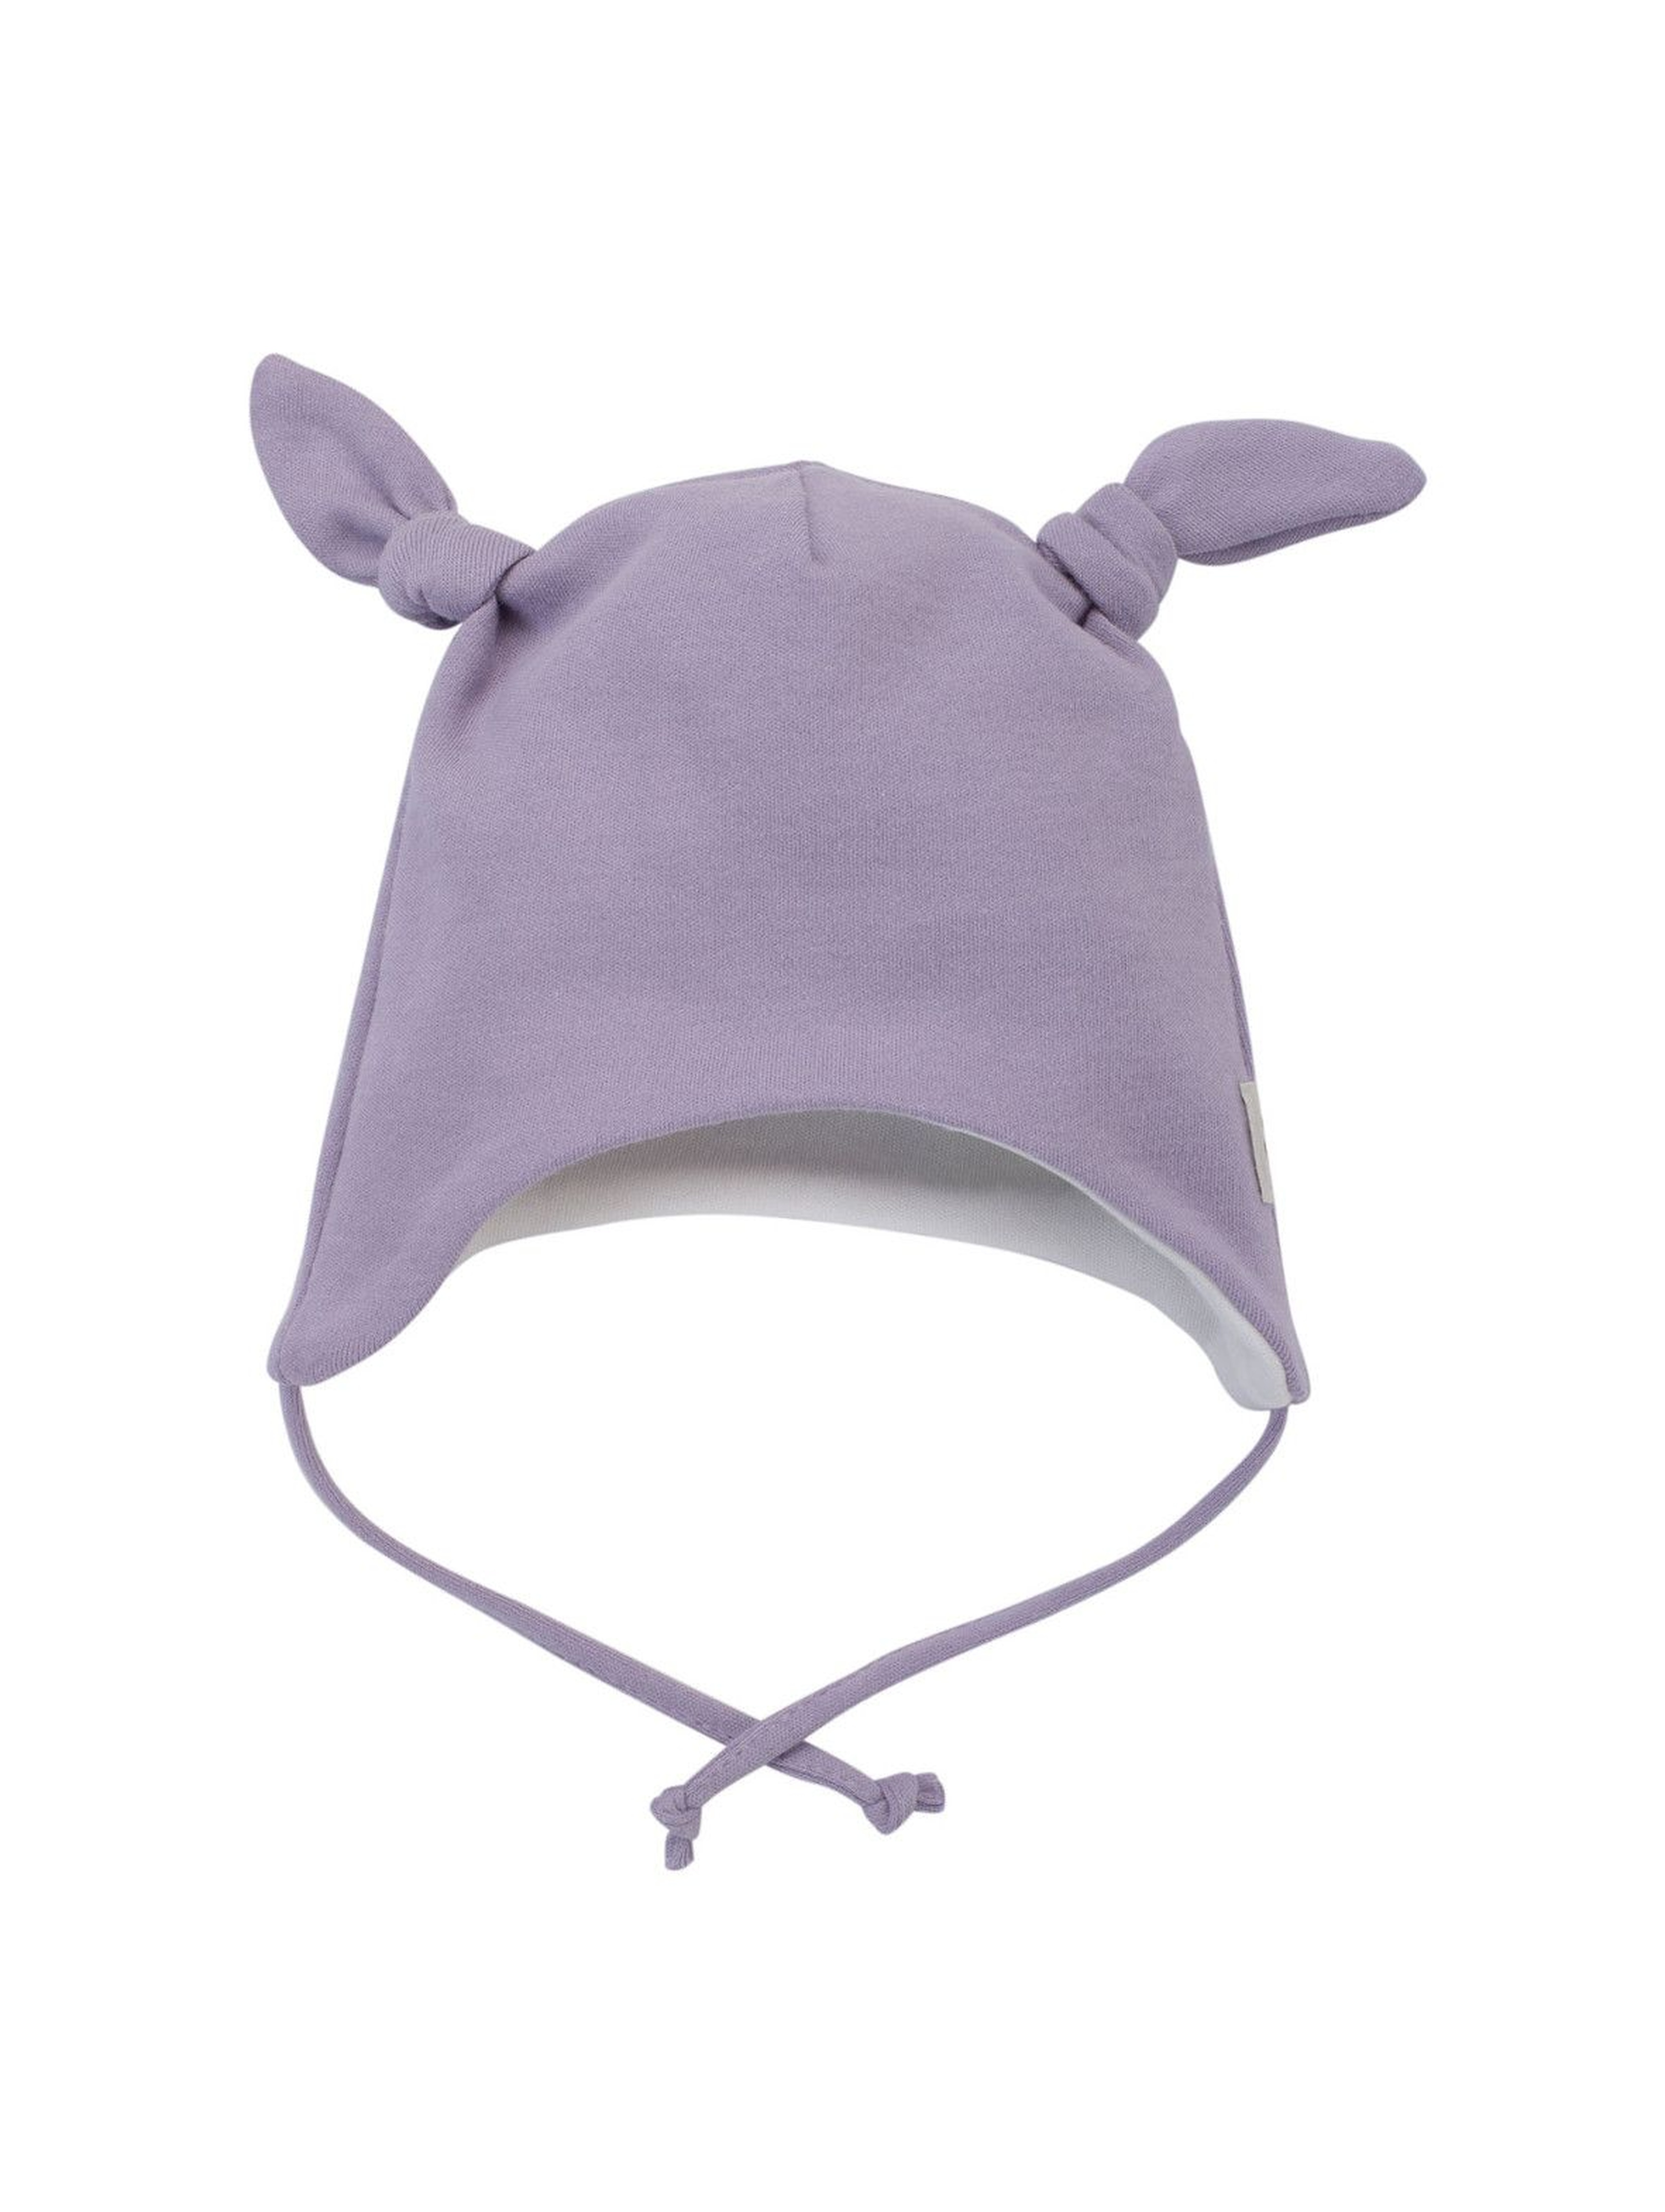 Dwuwarstwowa czapka niemowlęca wiązana pod szyją- fioletowa